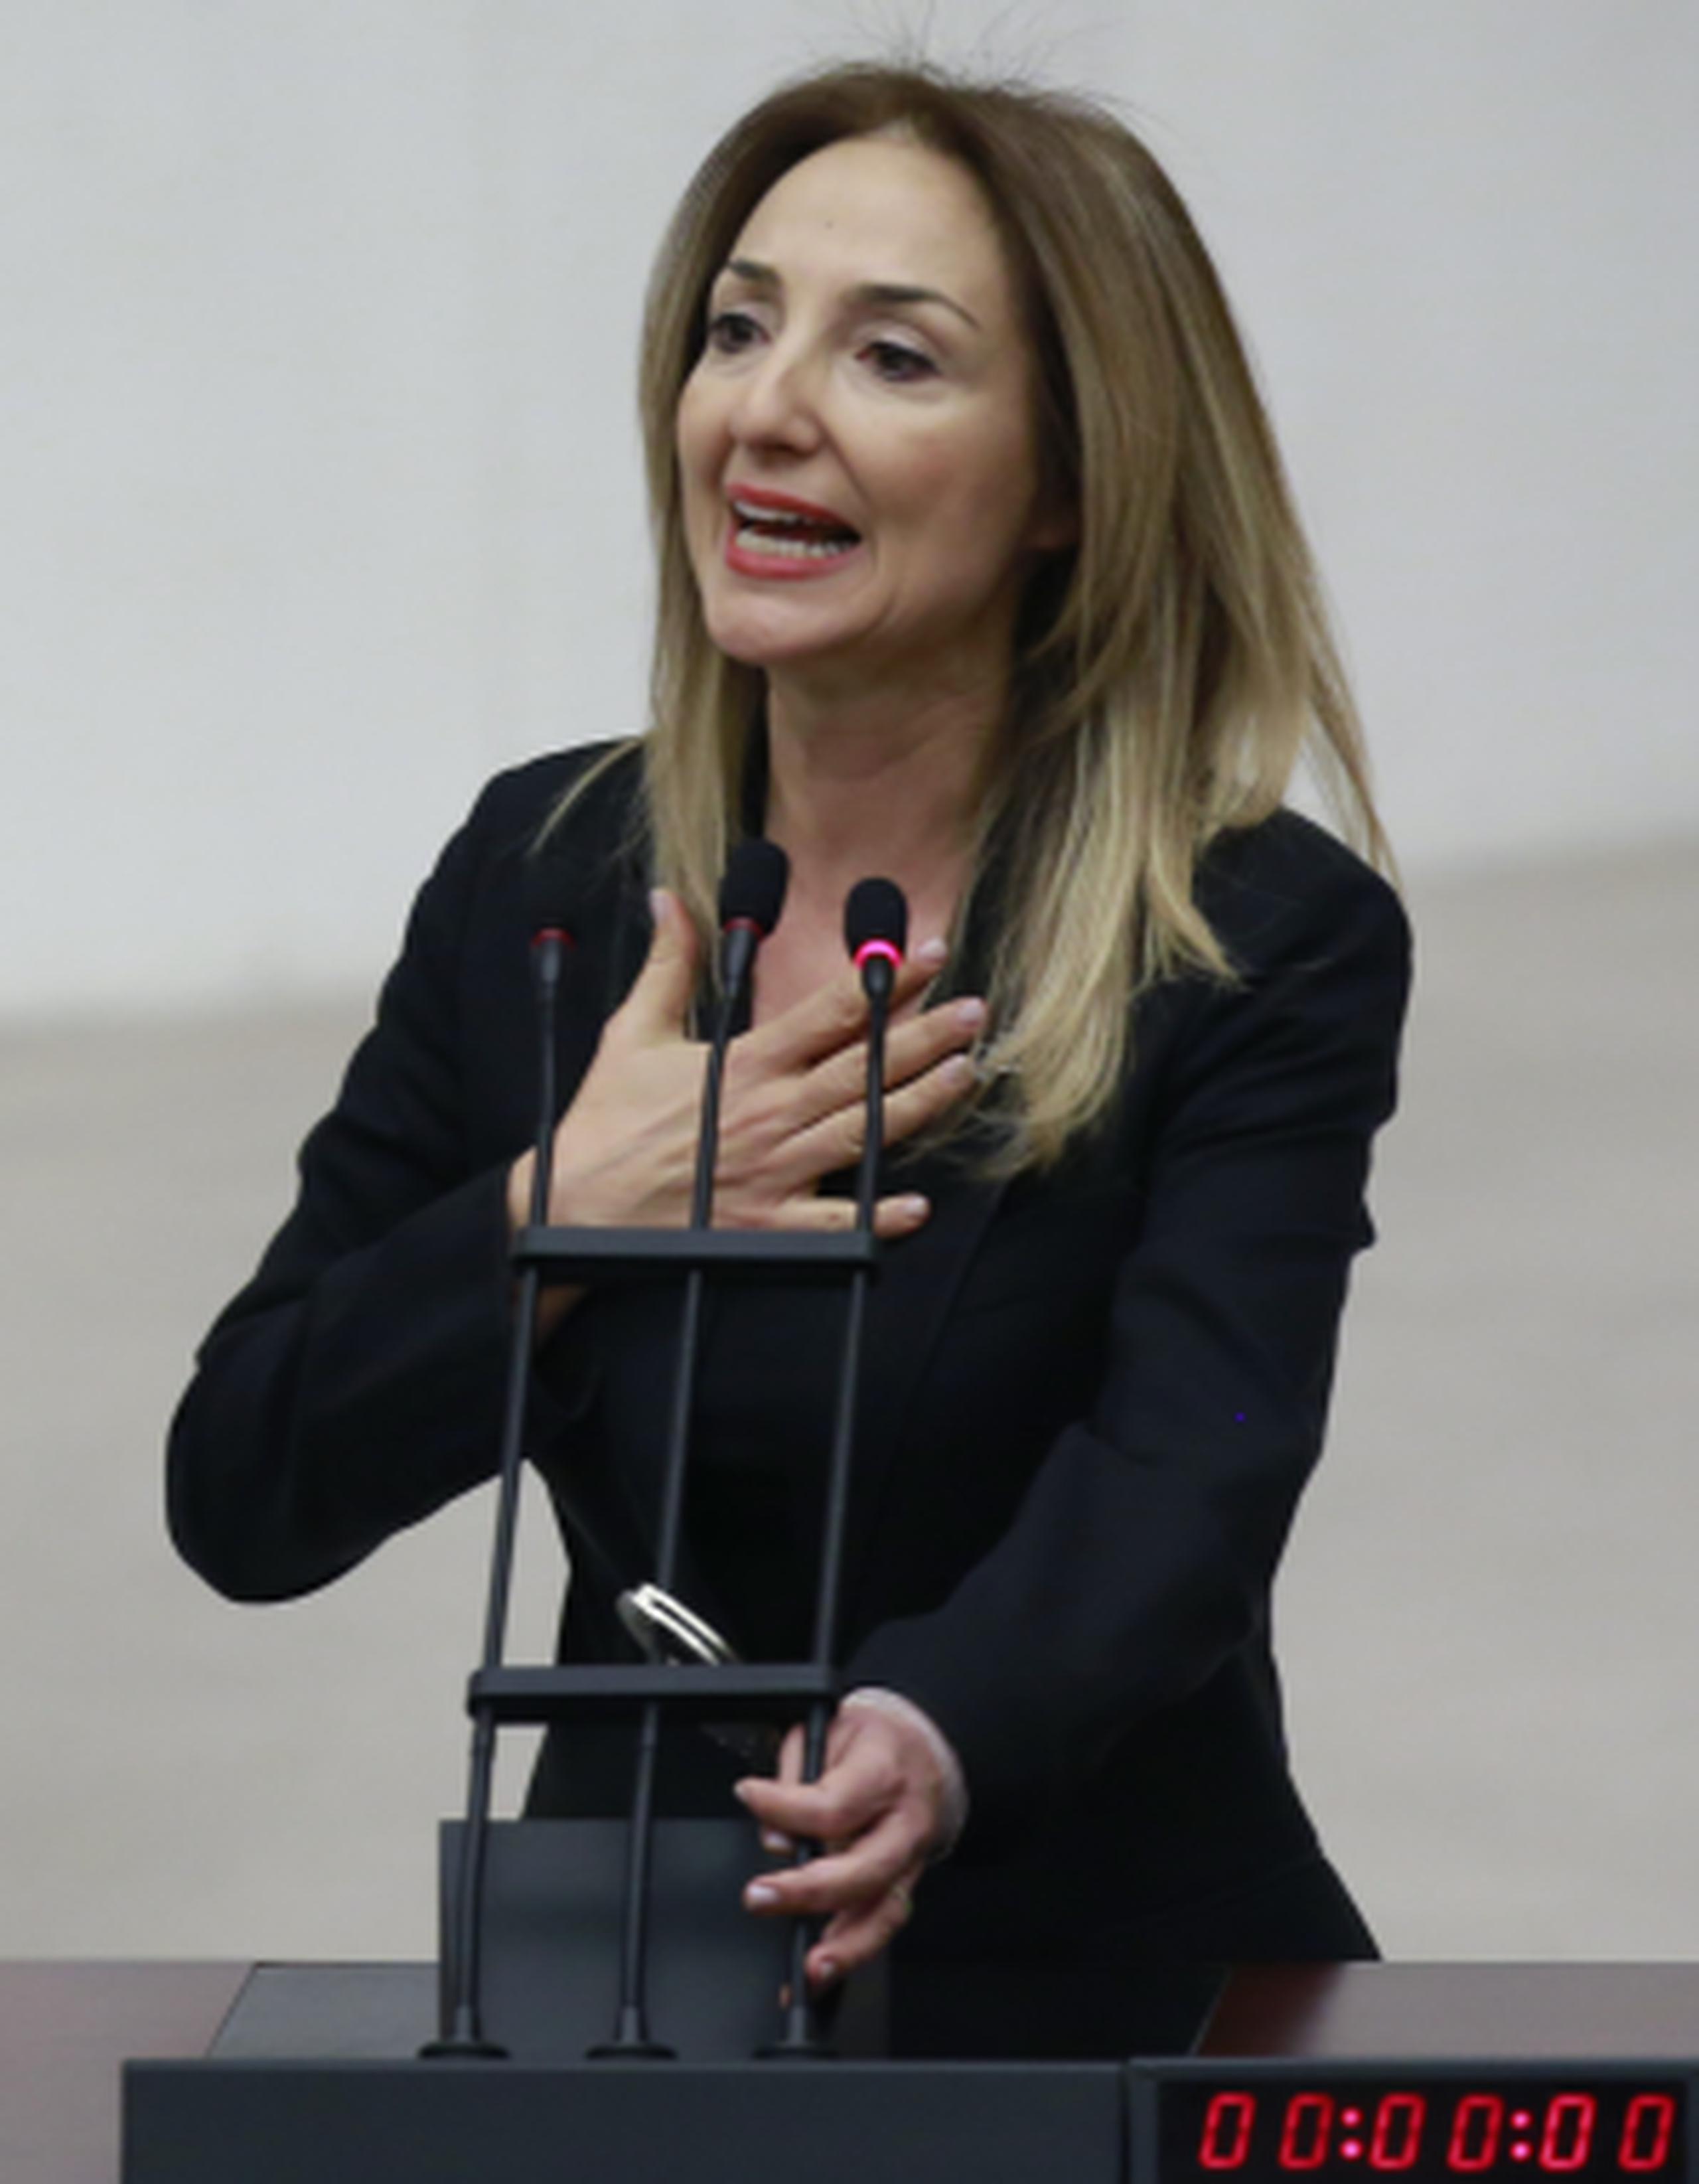 La legisladora independiente Aylin Nazliaka se esposó a los micrófonos en protesta y para impedir que se votara sobre las reformas que otorgan más poder al presidente Recep Tayyip Erdogan, lo que inició una trifulca. (AP)